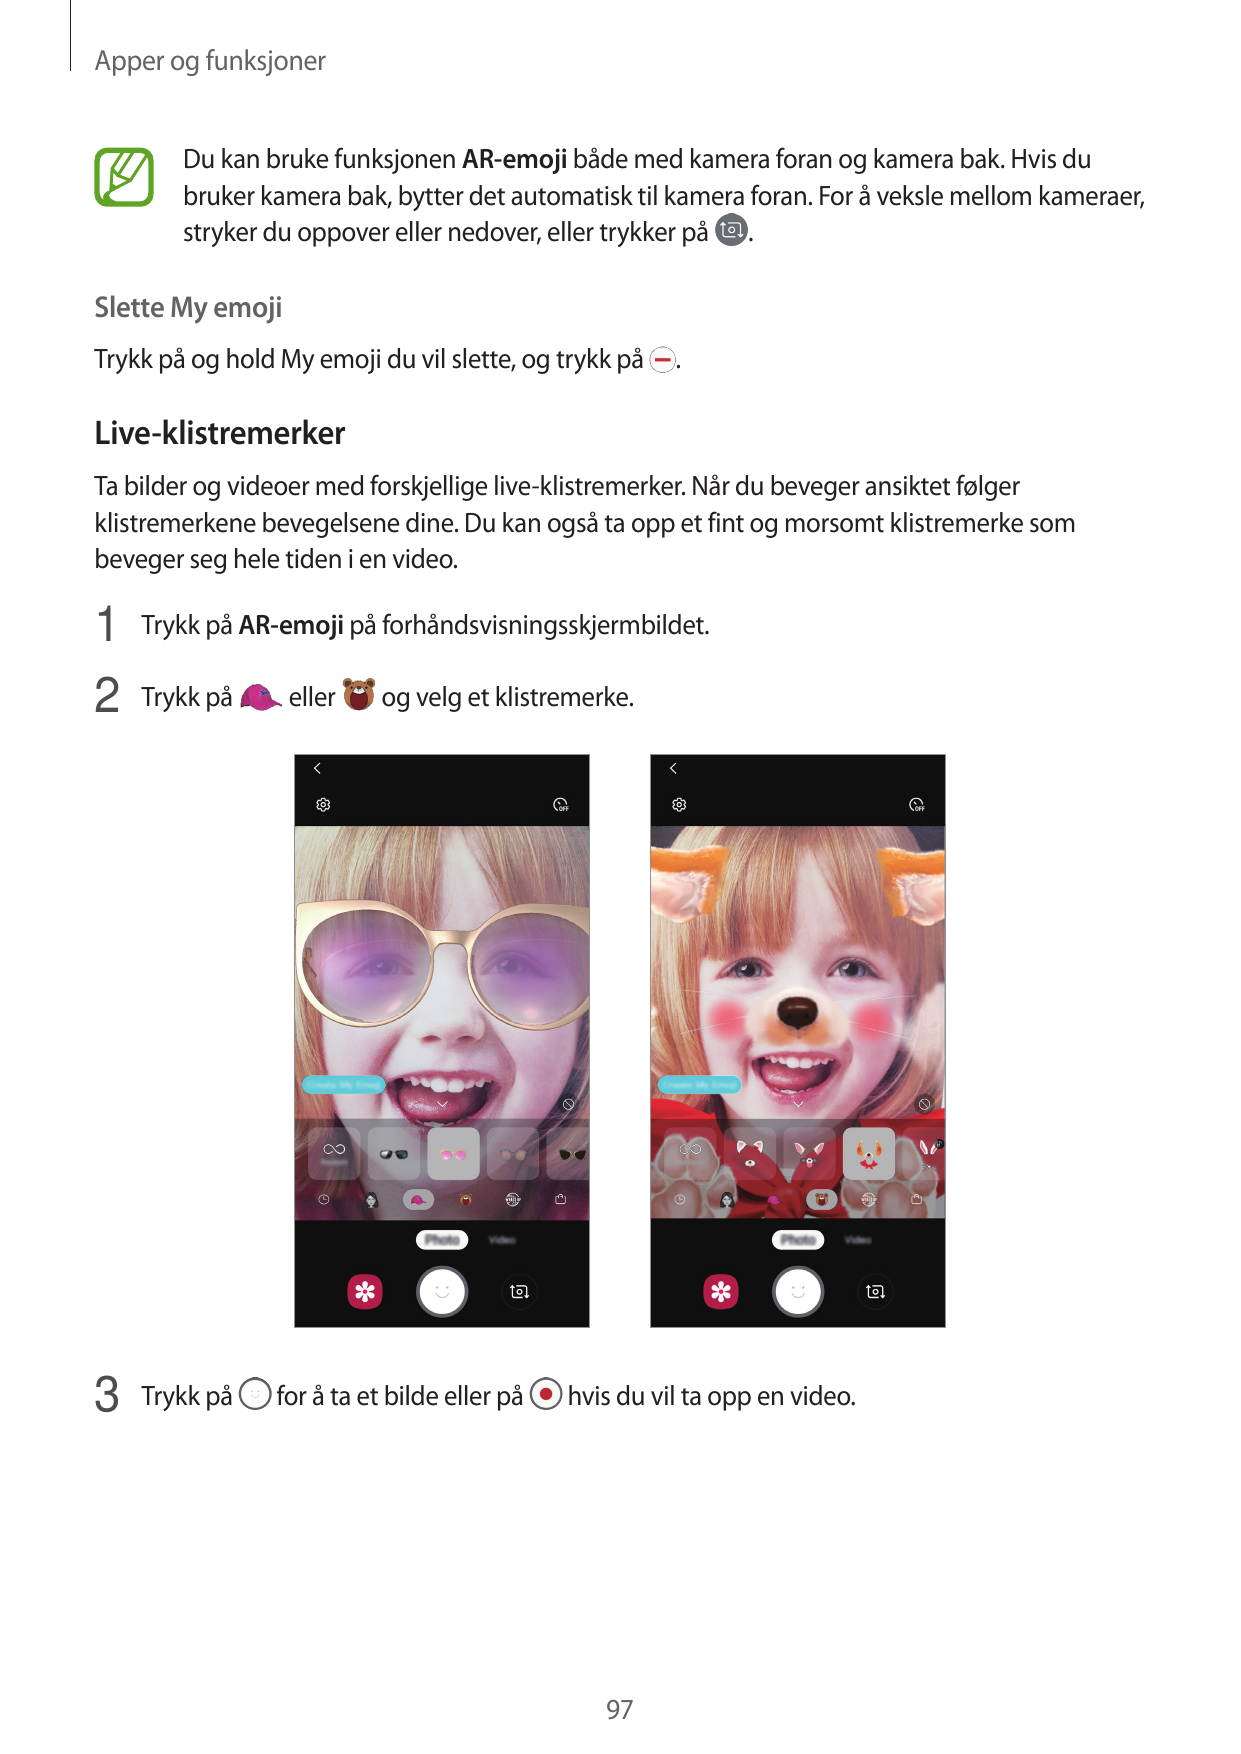 Apper og funksjonerDu kan bruke funksjonen AR-emoji både med kamera foran og kamera bak. Hvis dubruker kamera bak, bytter det au